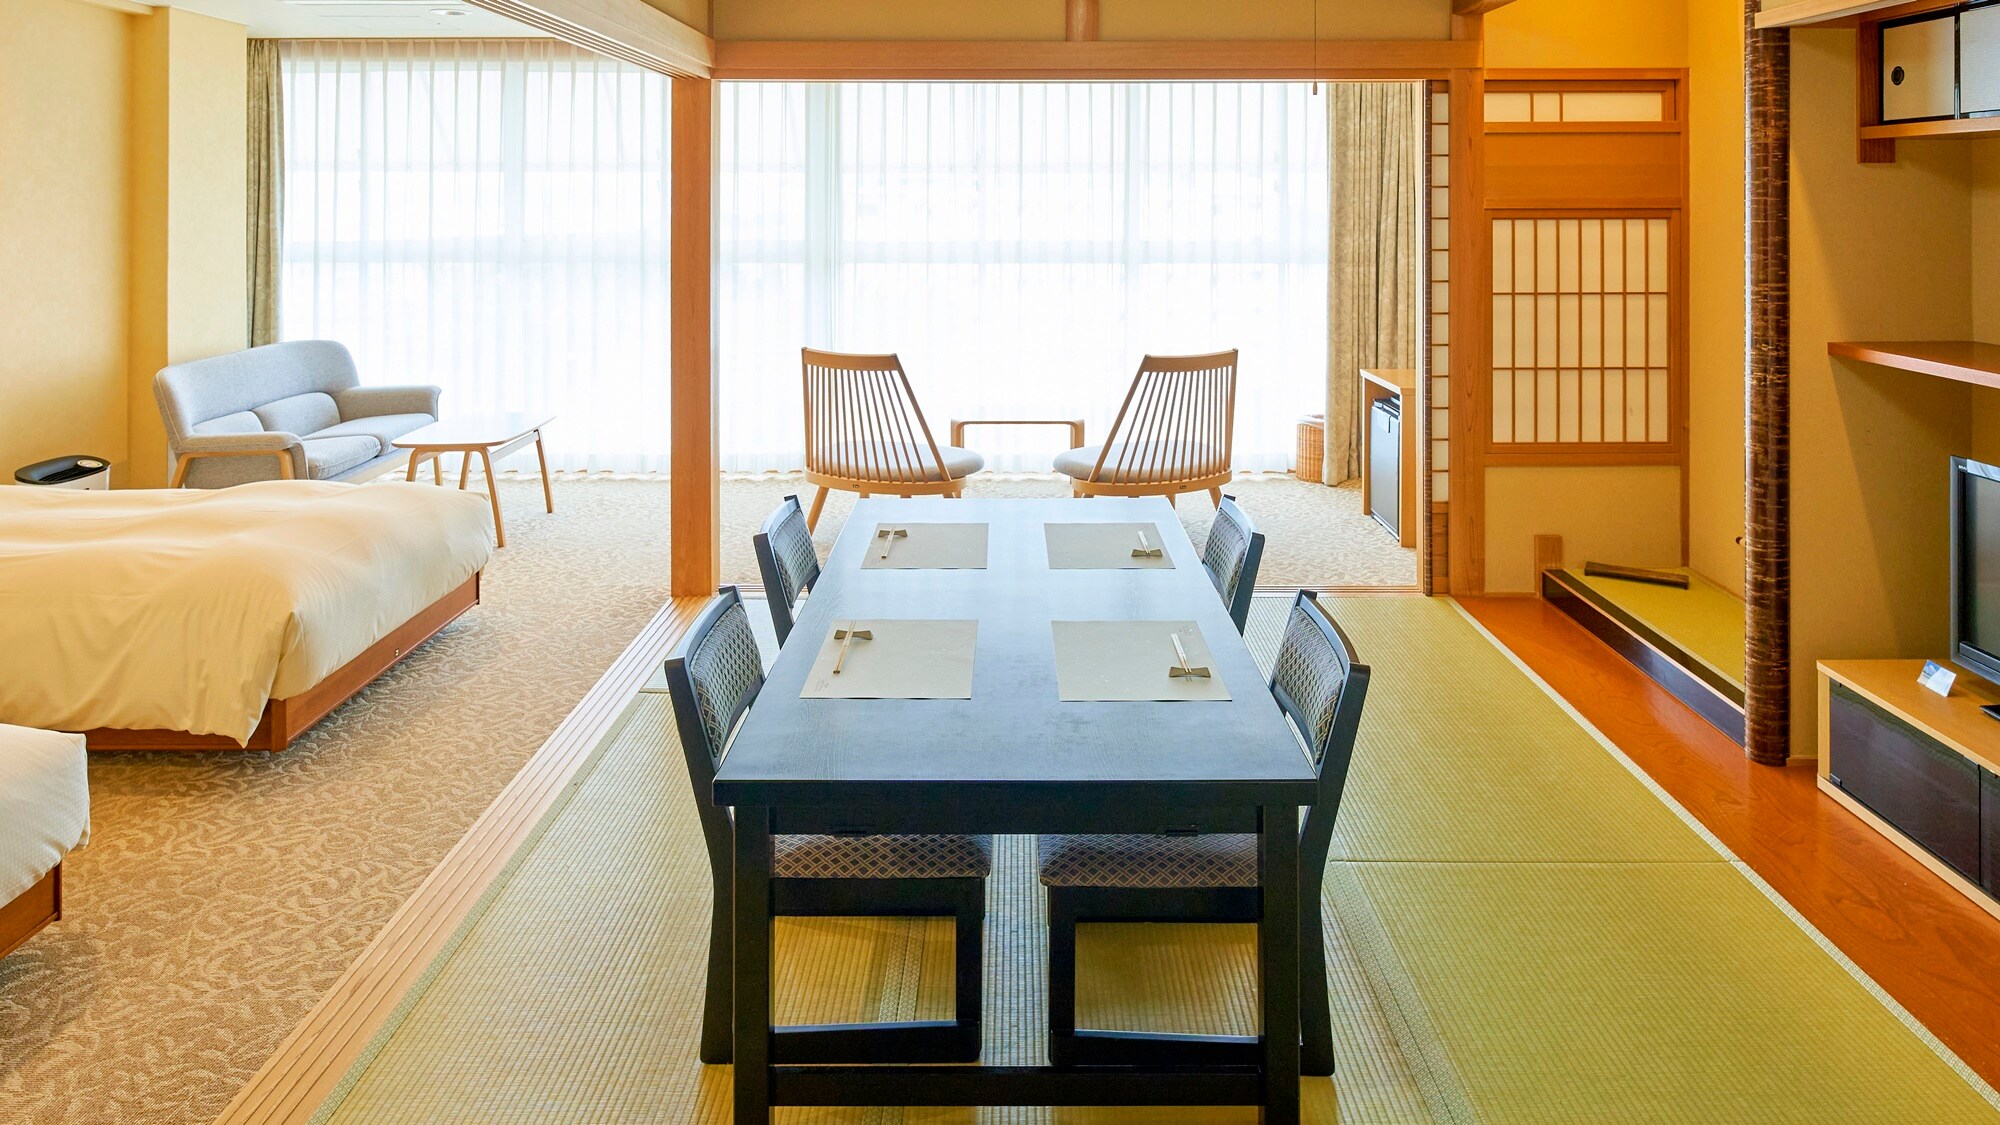 *<日西合璧的房间示例>日式与西式的融合♪ 睡在床上，睡在榻榻米上♪ 这就是实现梦想的房间。